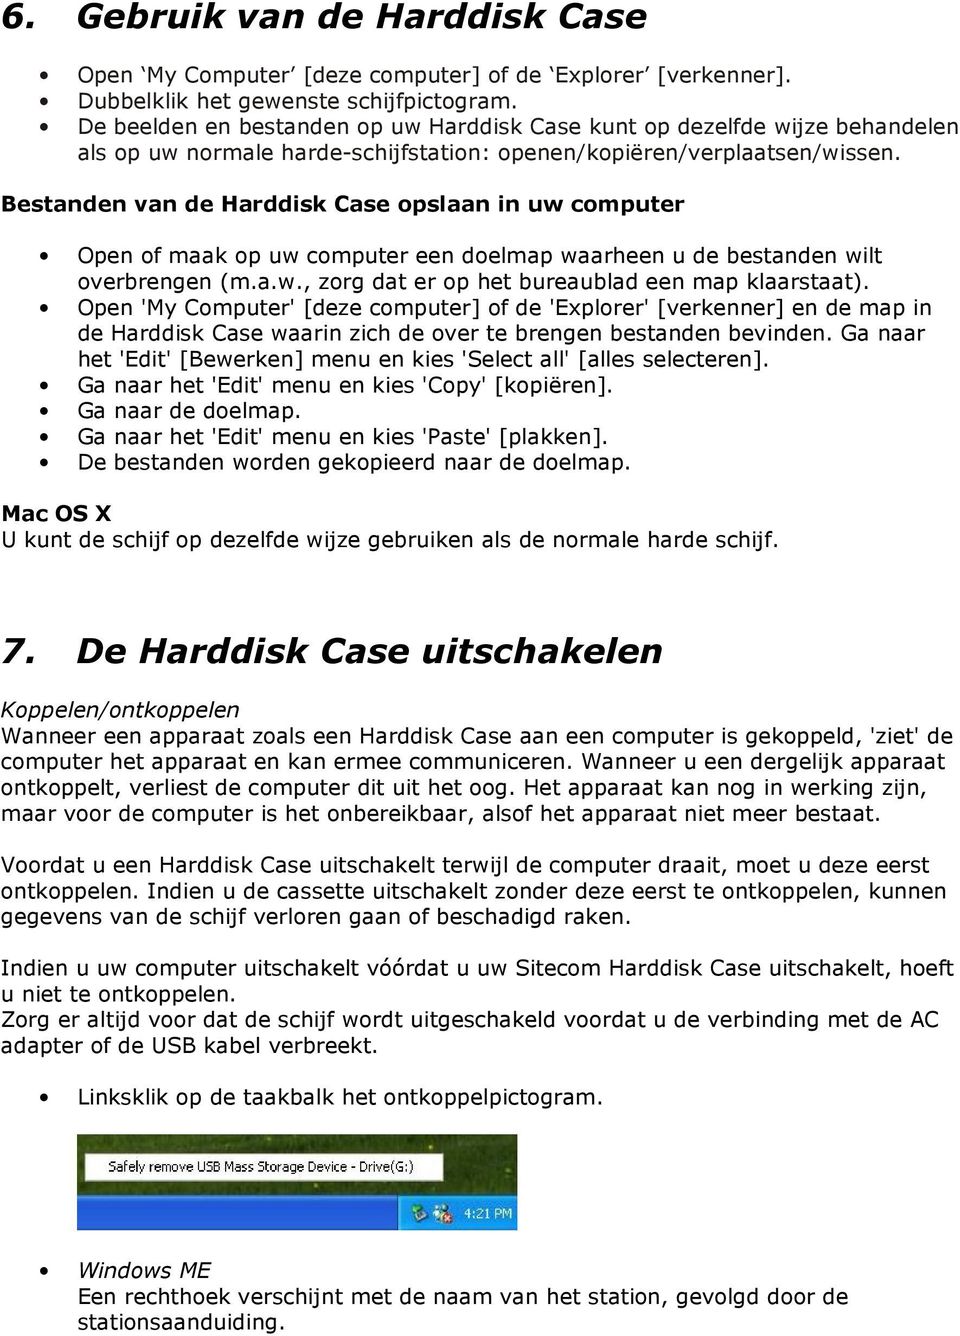 Bestanden van de Harddisk Case opslaan in uw computer Open of maak op uw computer een doelmap waarheen u de bestanden wilt overbrengen (m.a.w., zorg dat er op het bureaublad een map klaarstaat).